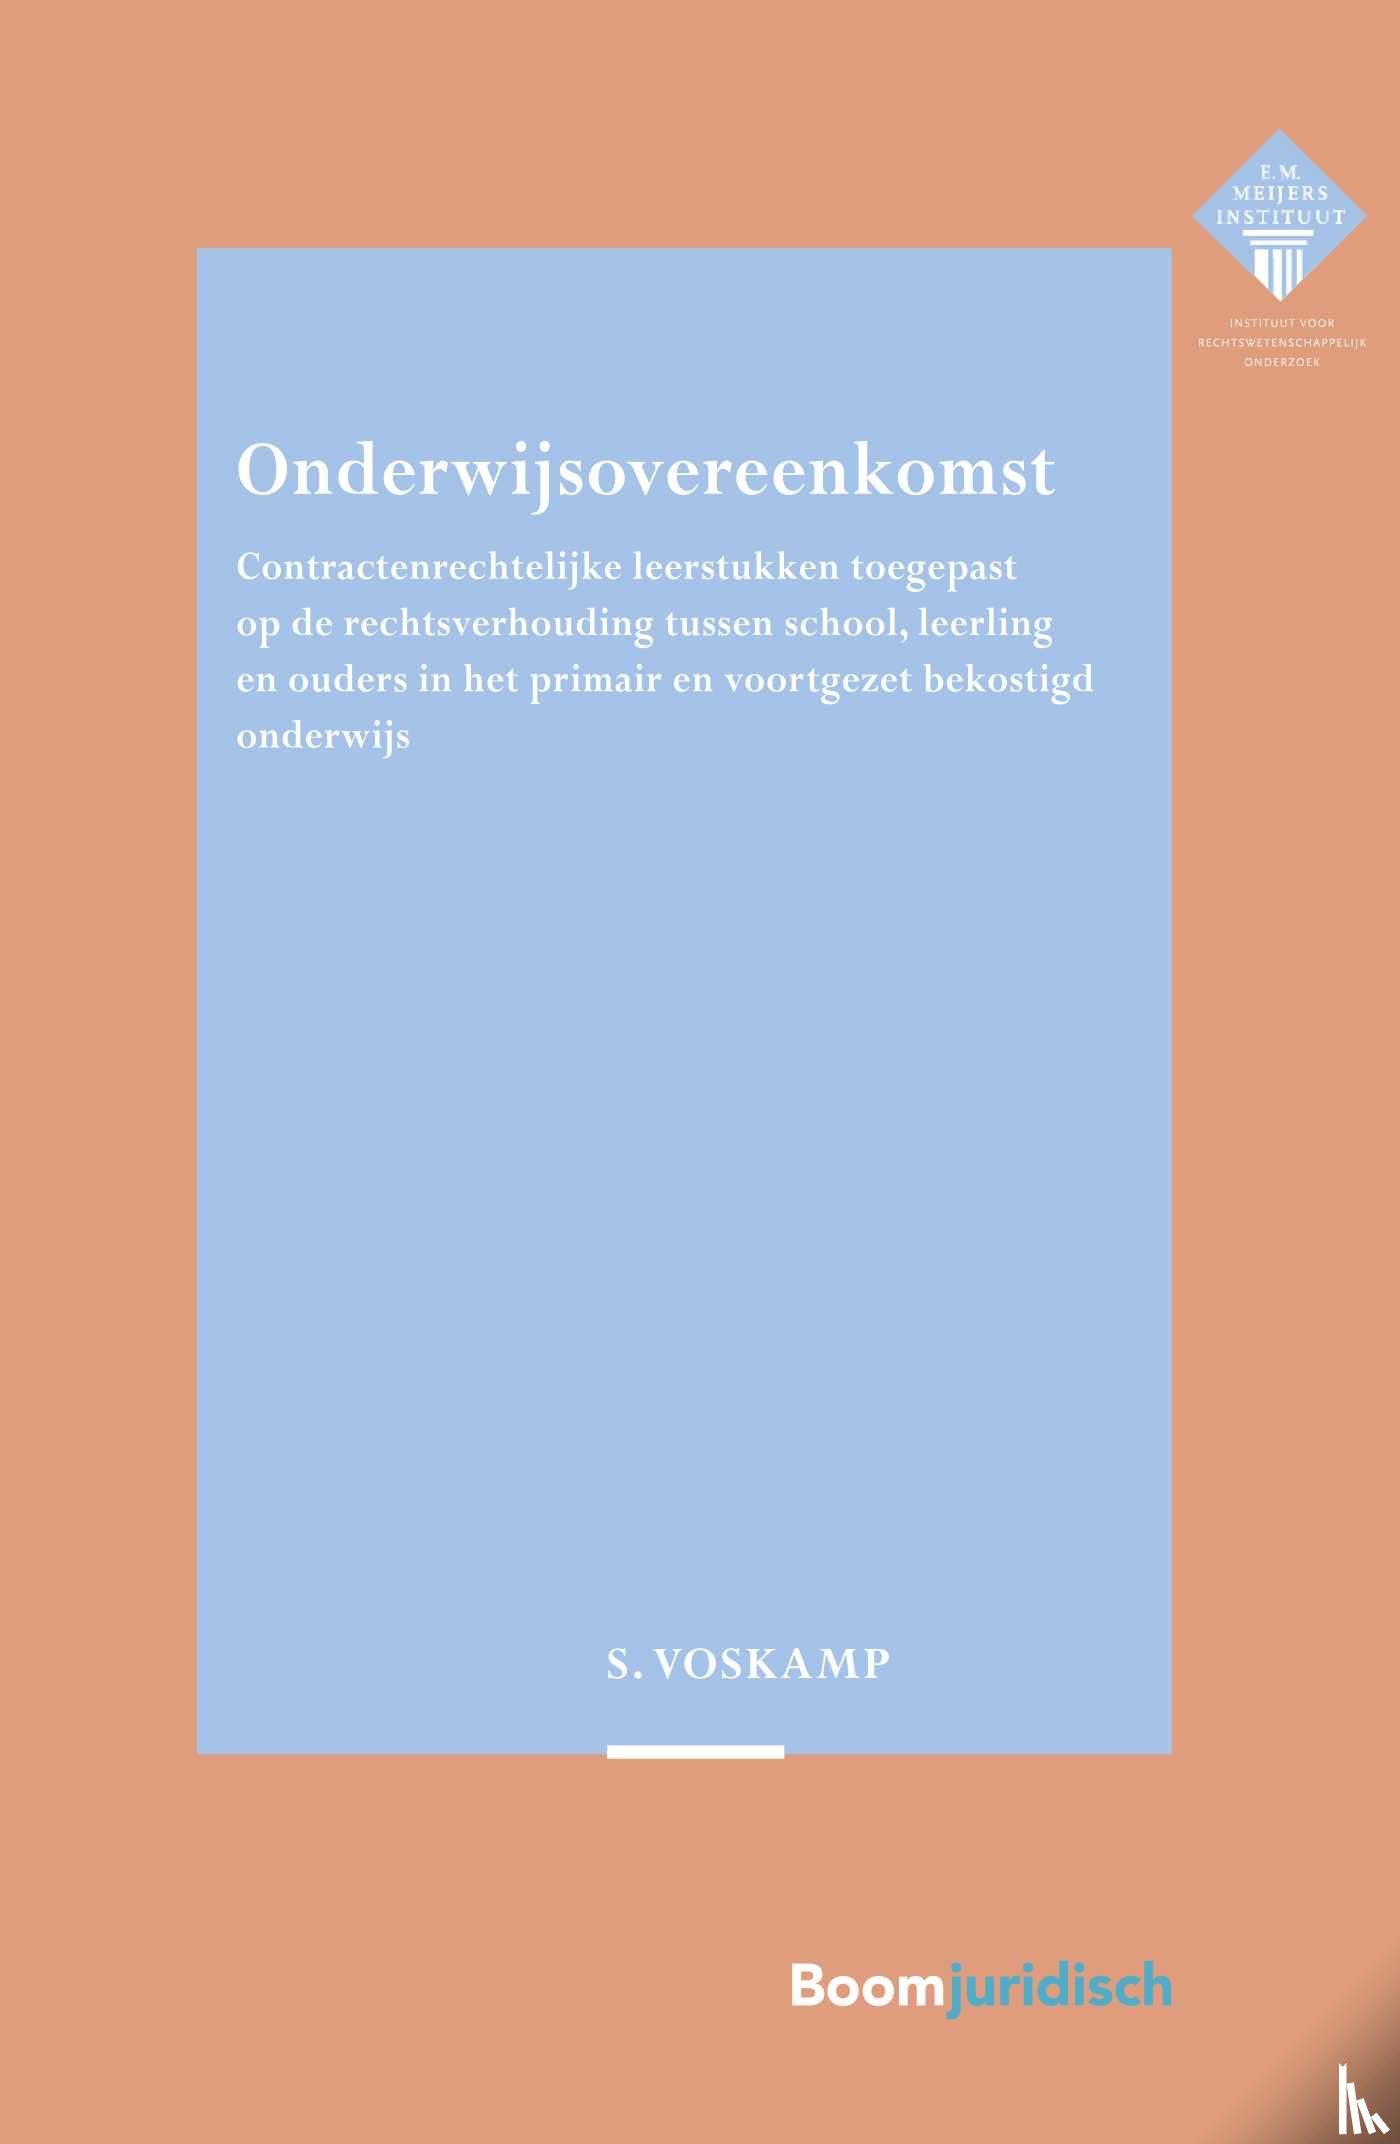 Voskamp, Stijn - Onderwijsovereenkomst